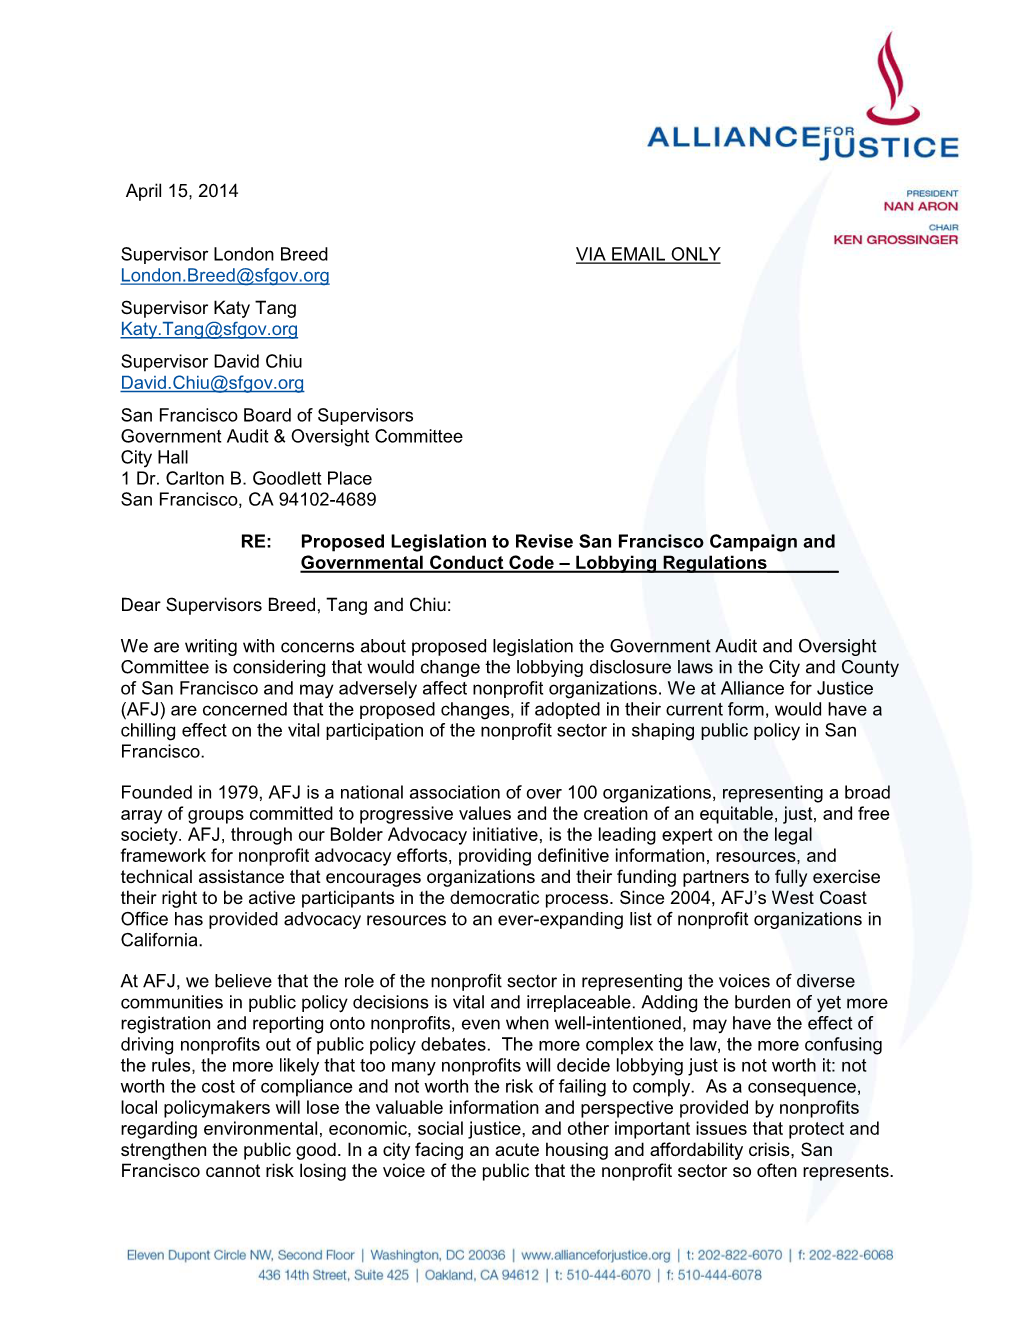 AFJ Letter to San Francisco Board of Supervisors